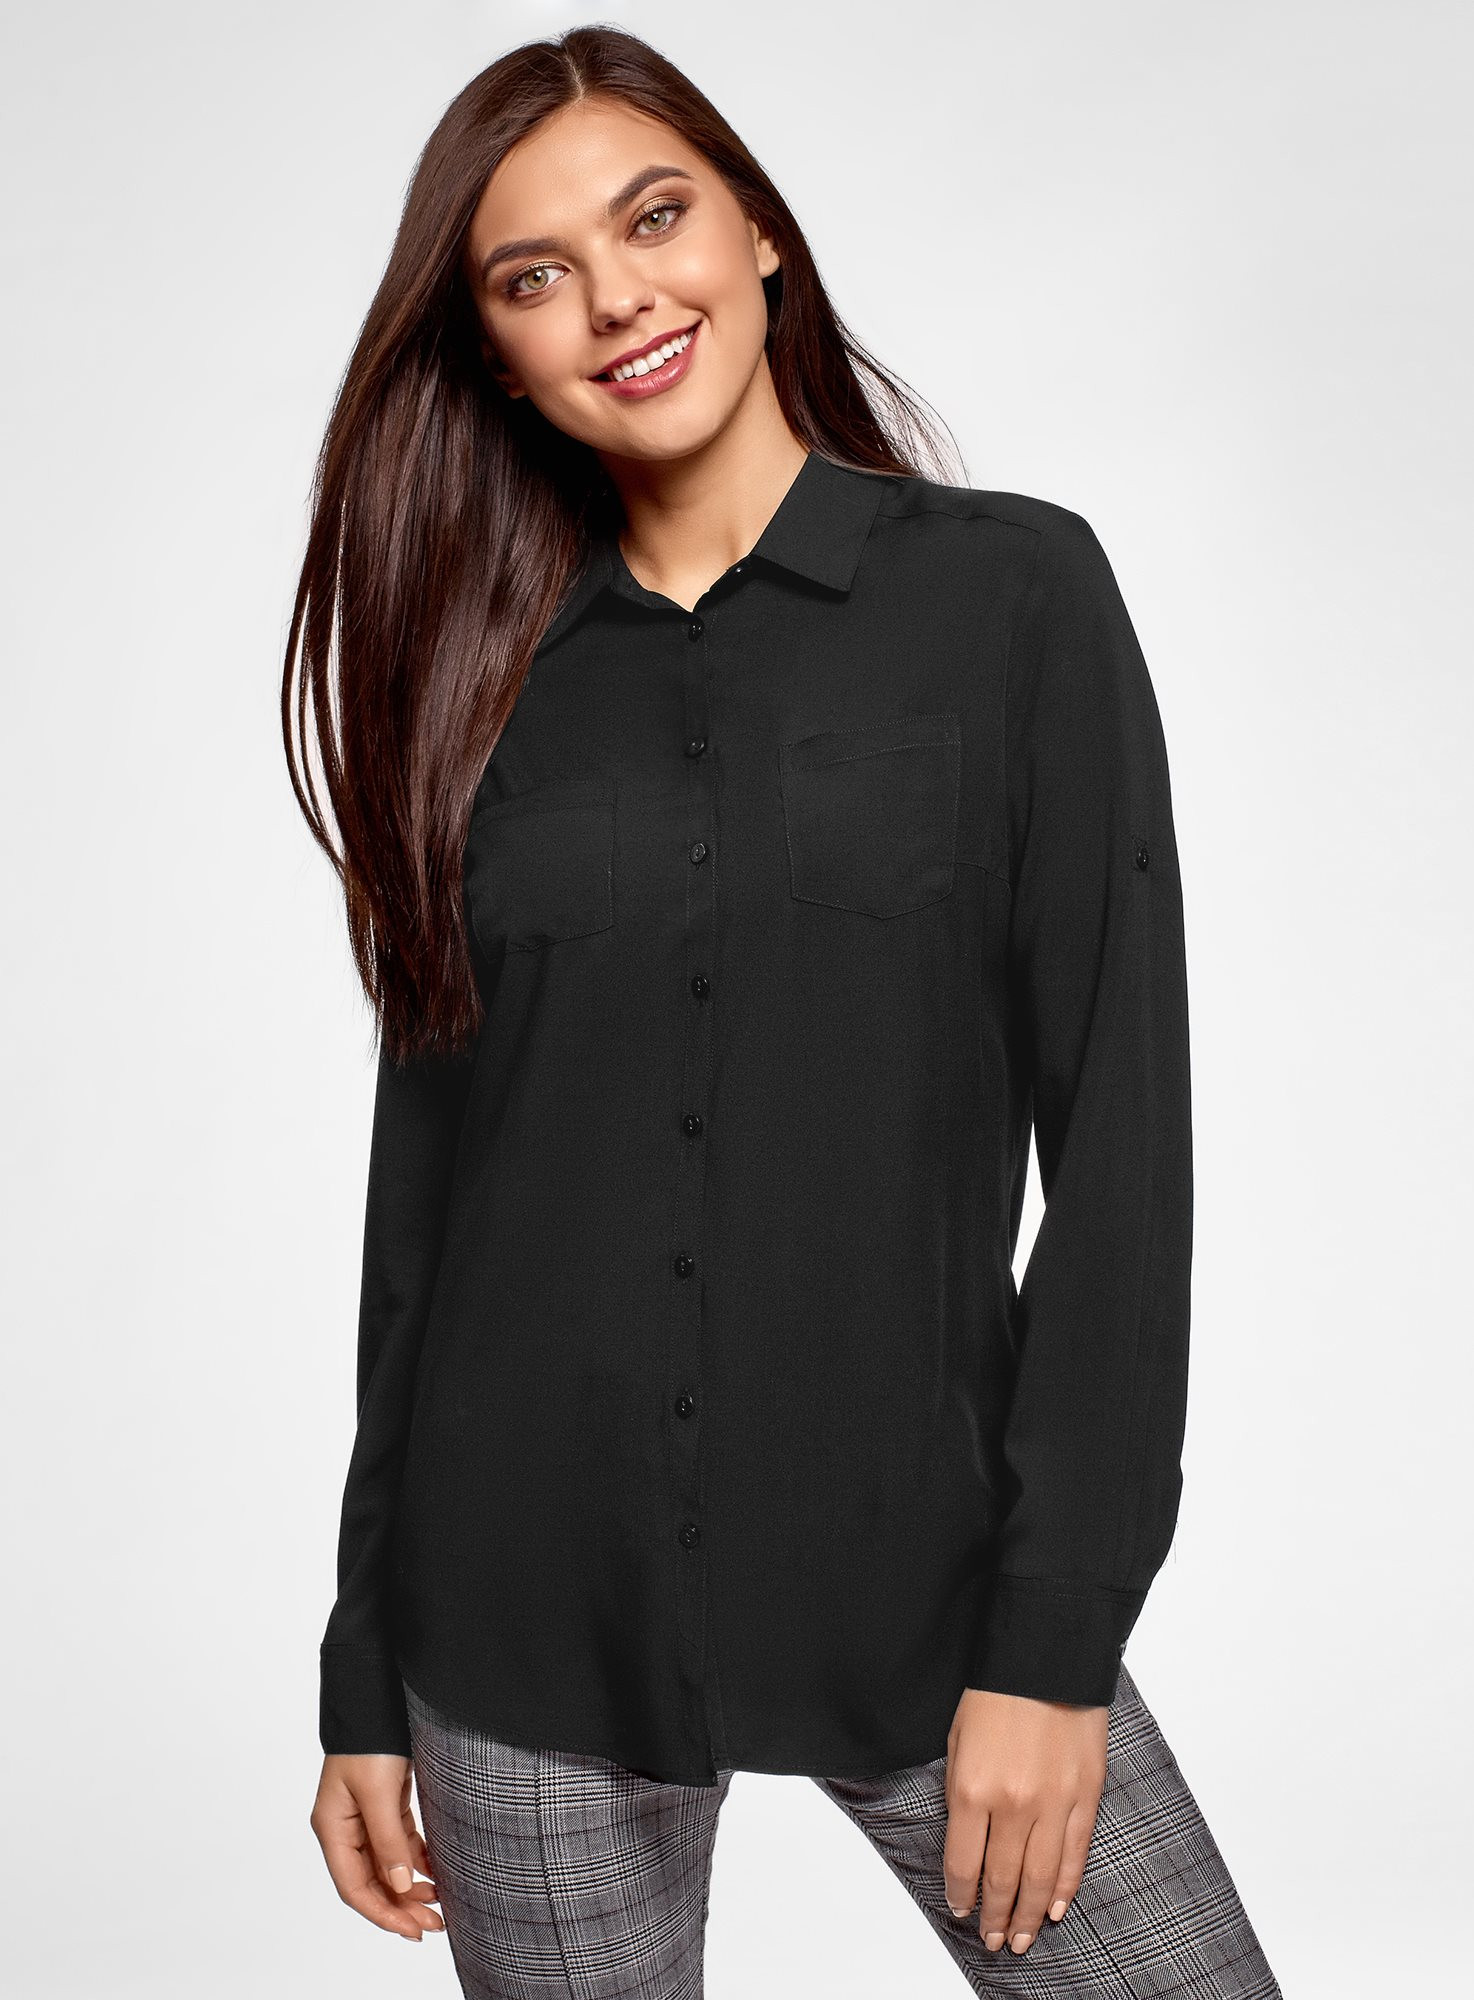 Черная блузка с длинным рукавом. Черная блузка. Чёрная блузка женская. Блузка с длинным рукавом. Блуза черная женская.